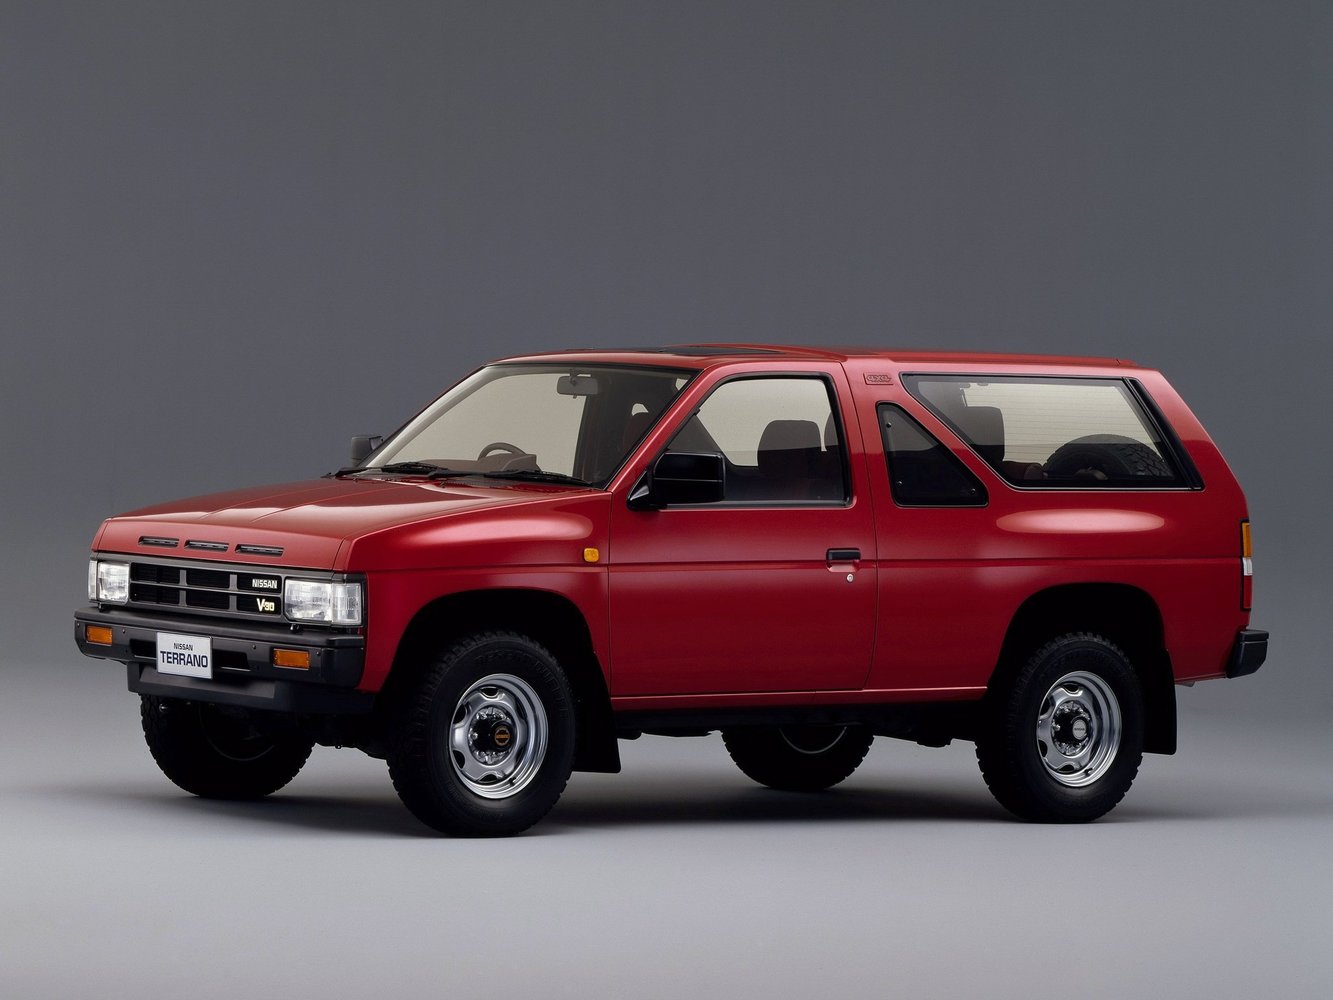 Nissan Terrano 1987 - 1995